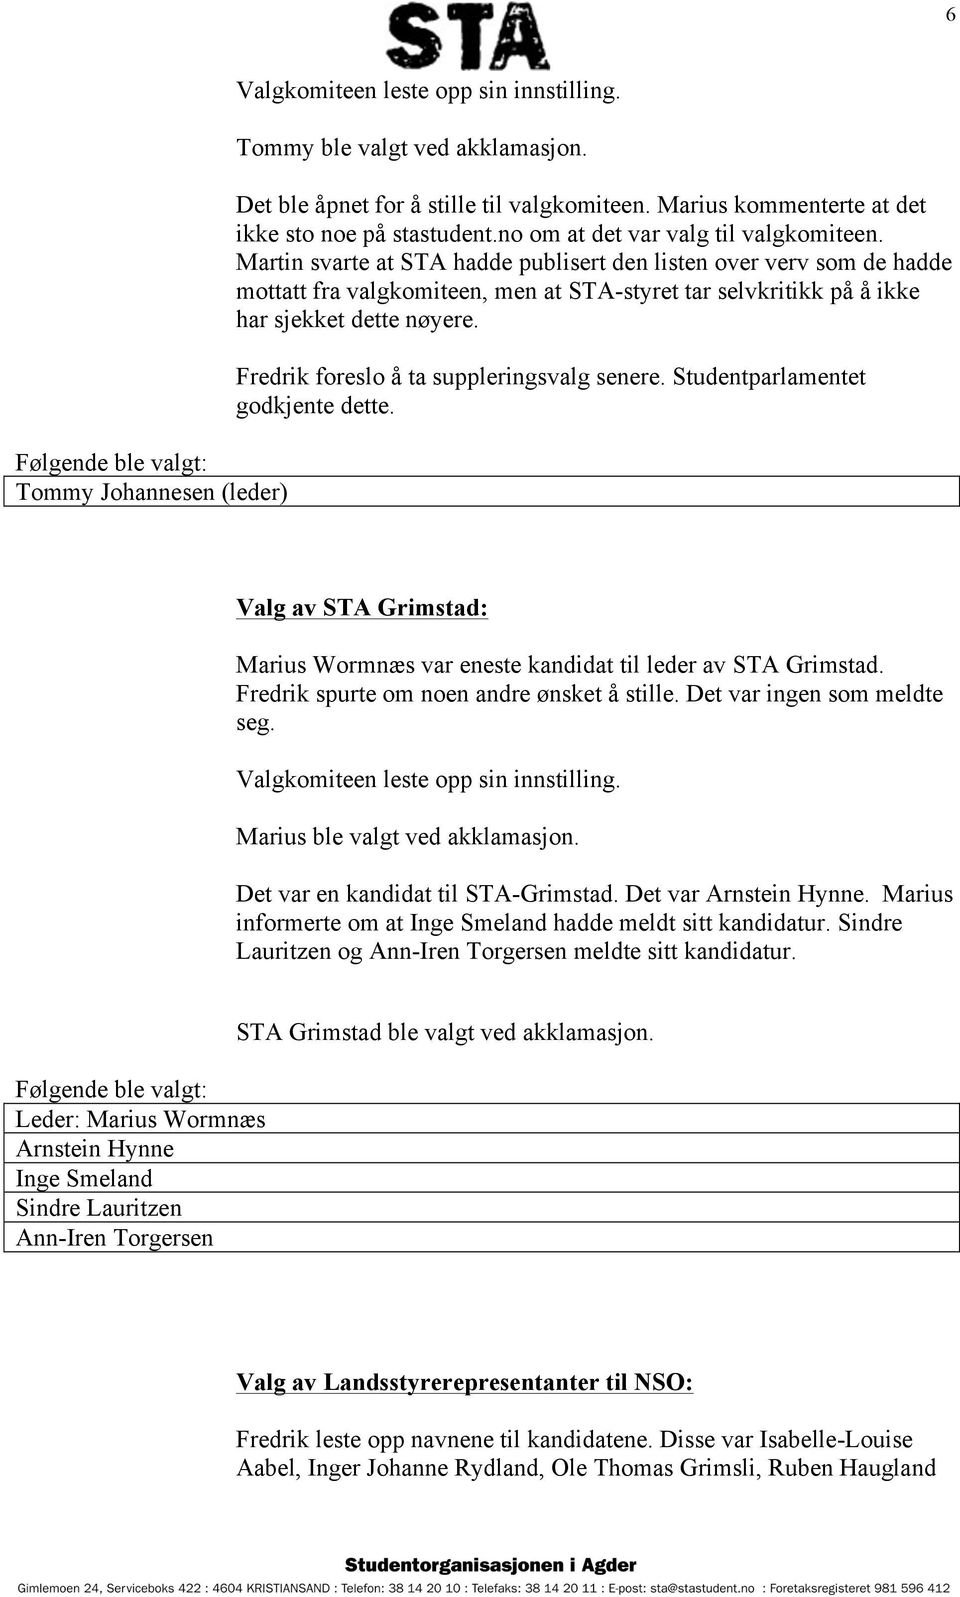 Fredrik foreslo å ta suppleringsvalg senere. Studentparlamentet godkjente dette. Valg av STA Grimstad: Marius Wormnæs var eneste kandidat til leder av STA Grimstad.